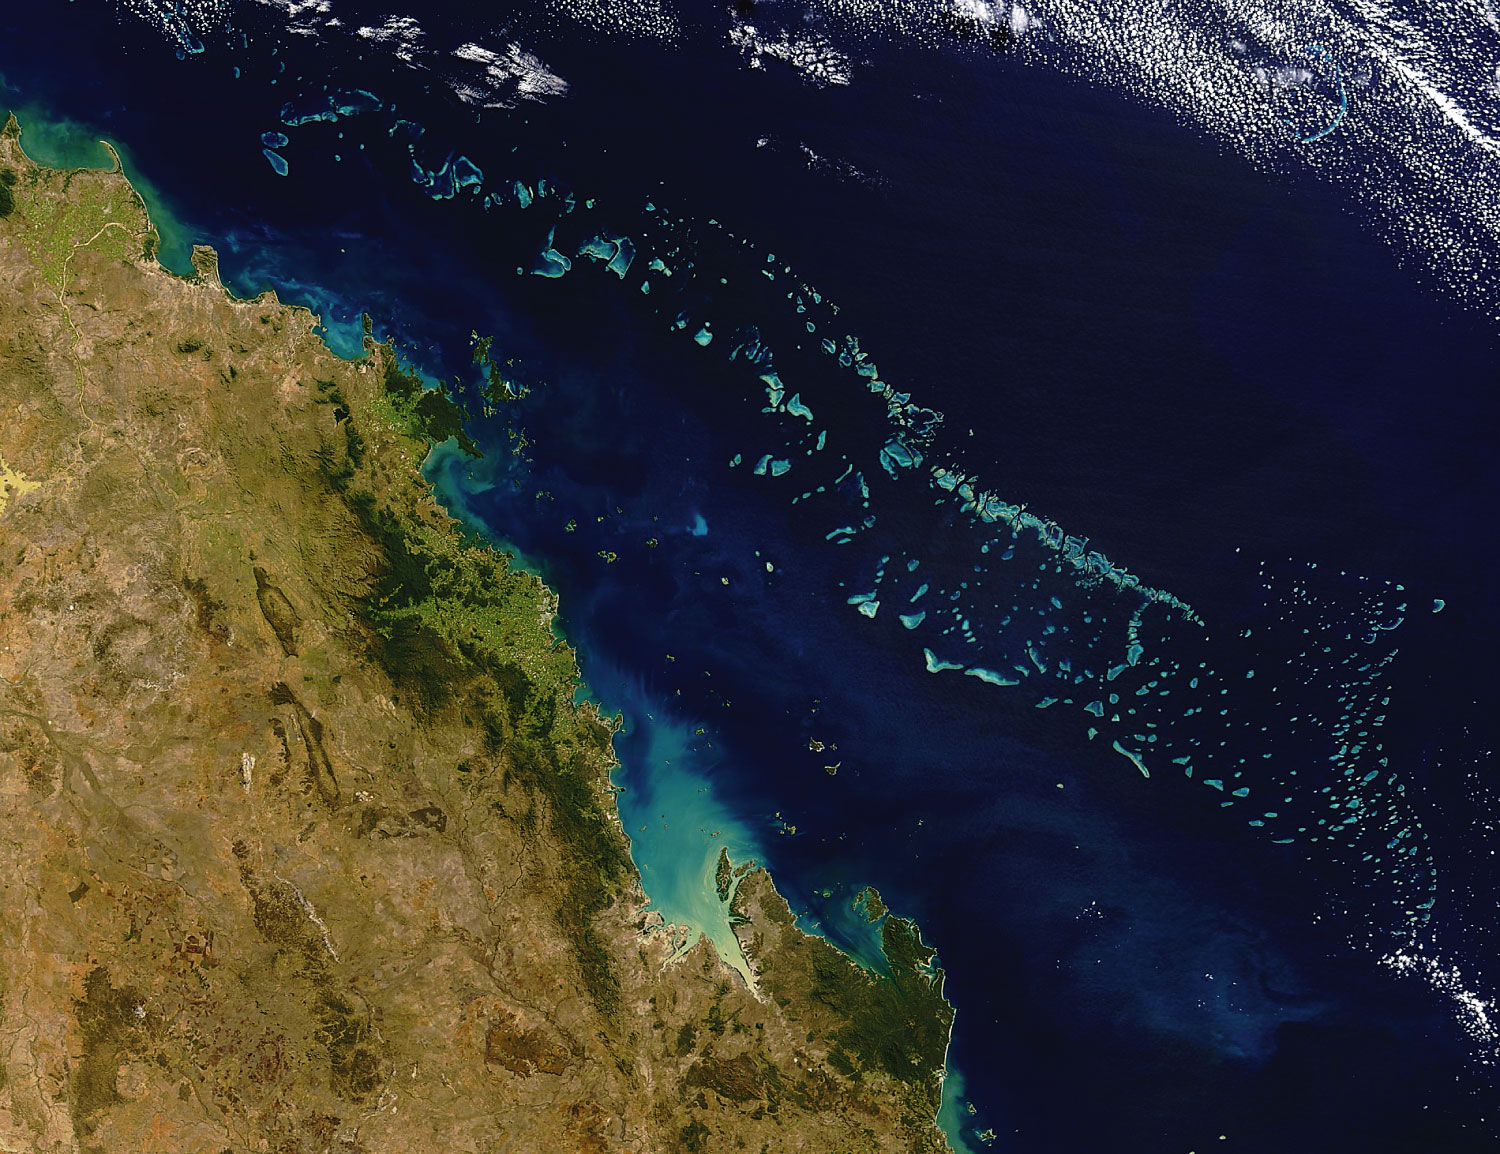 Australia’s Great Barrier Reef